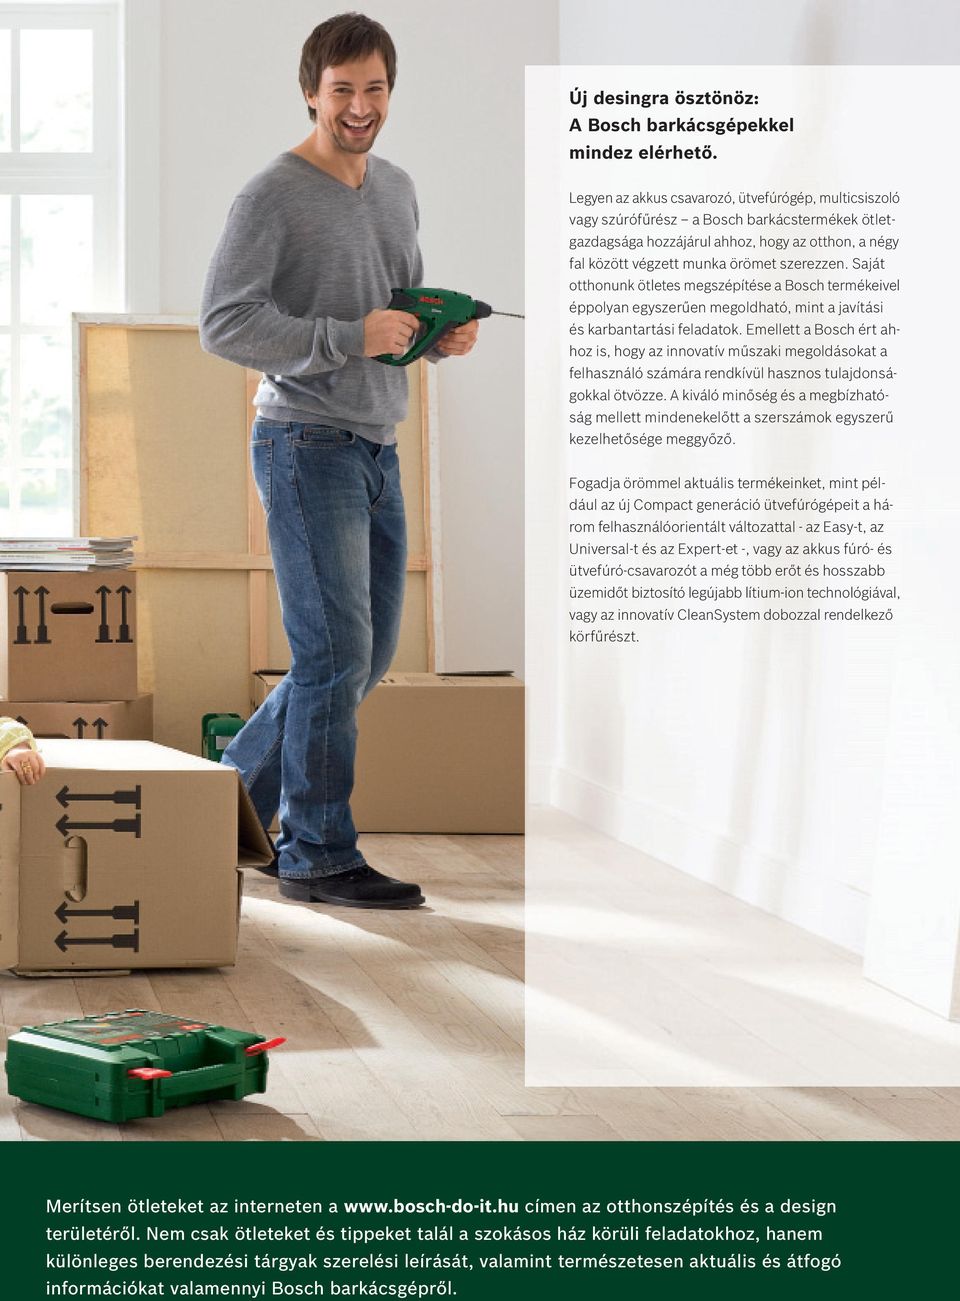 Saját otthonunk ötletes megszépítése a Bosch termékeivel éppolyan egyszerűen megoldható, mint a javítási és karbantartási feladatok.